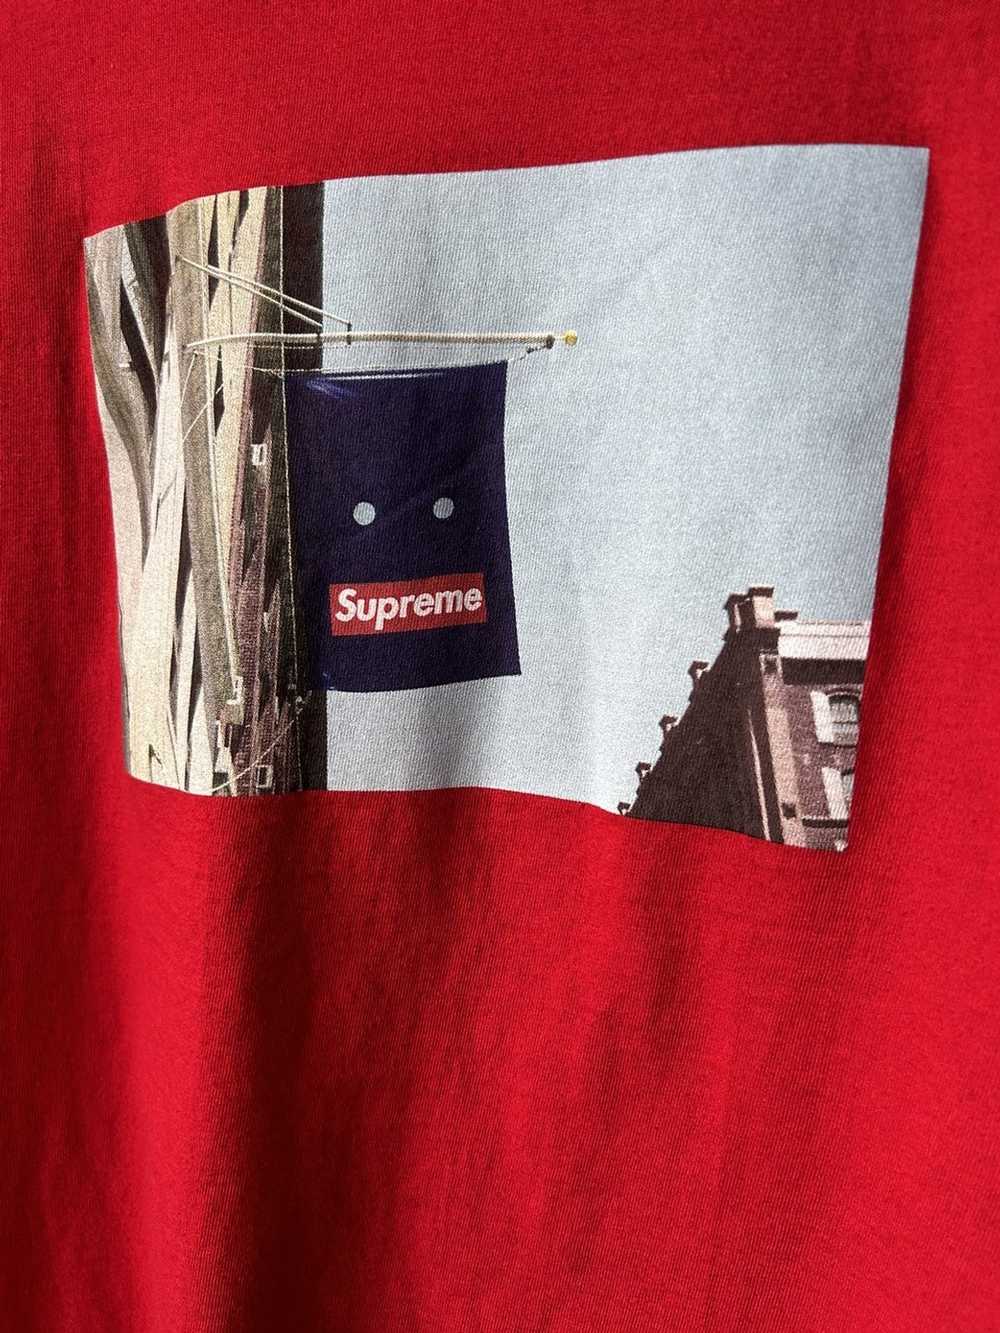 Supreme Supreme Banner T-shirt - image 3